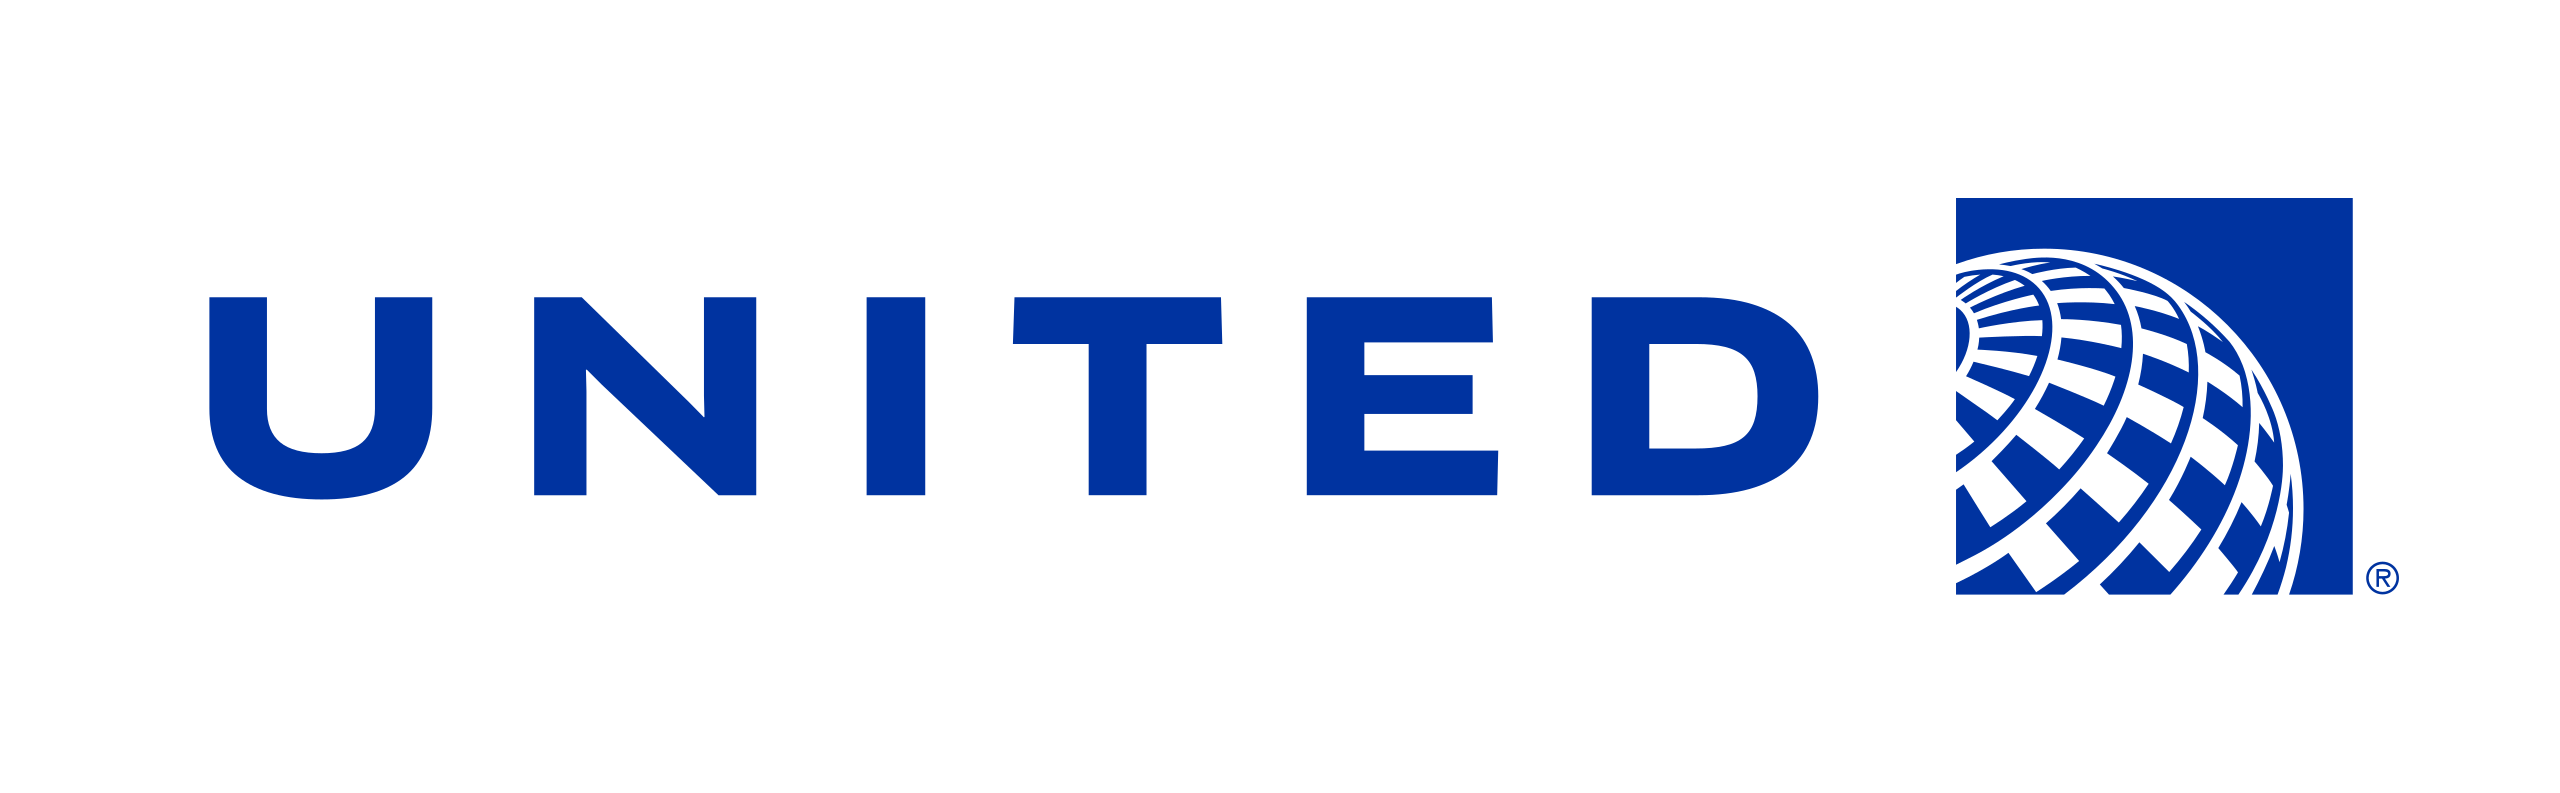 미국 유나이티드 항공 로고 사진